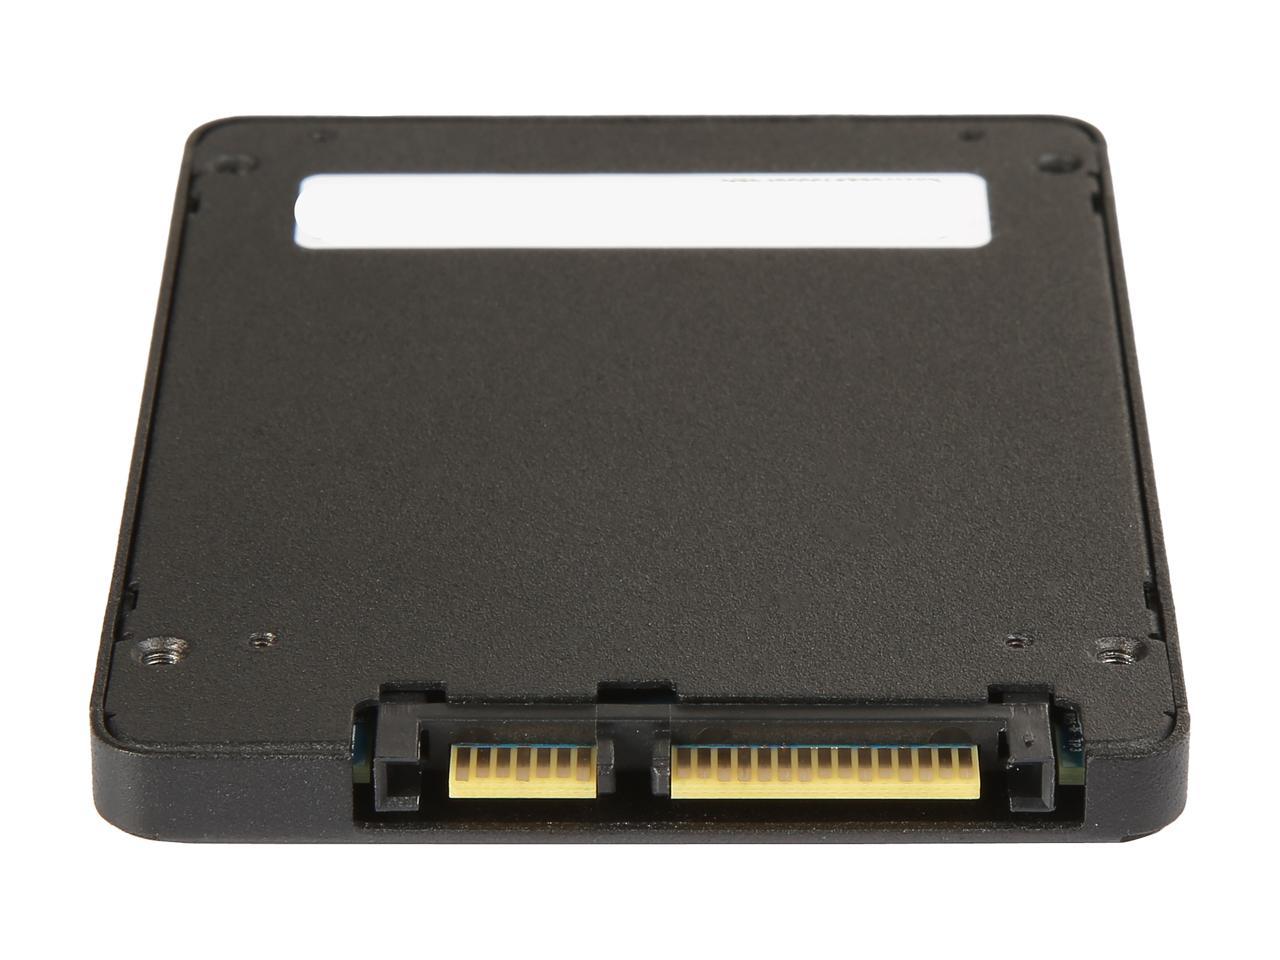 Mushkin TRIACTOR 3DL 2.5" 128GB SATA III 3D TLC Internal Solid State Drive (SSD) MKNSSDTR128GB-3DL